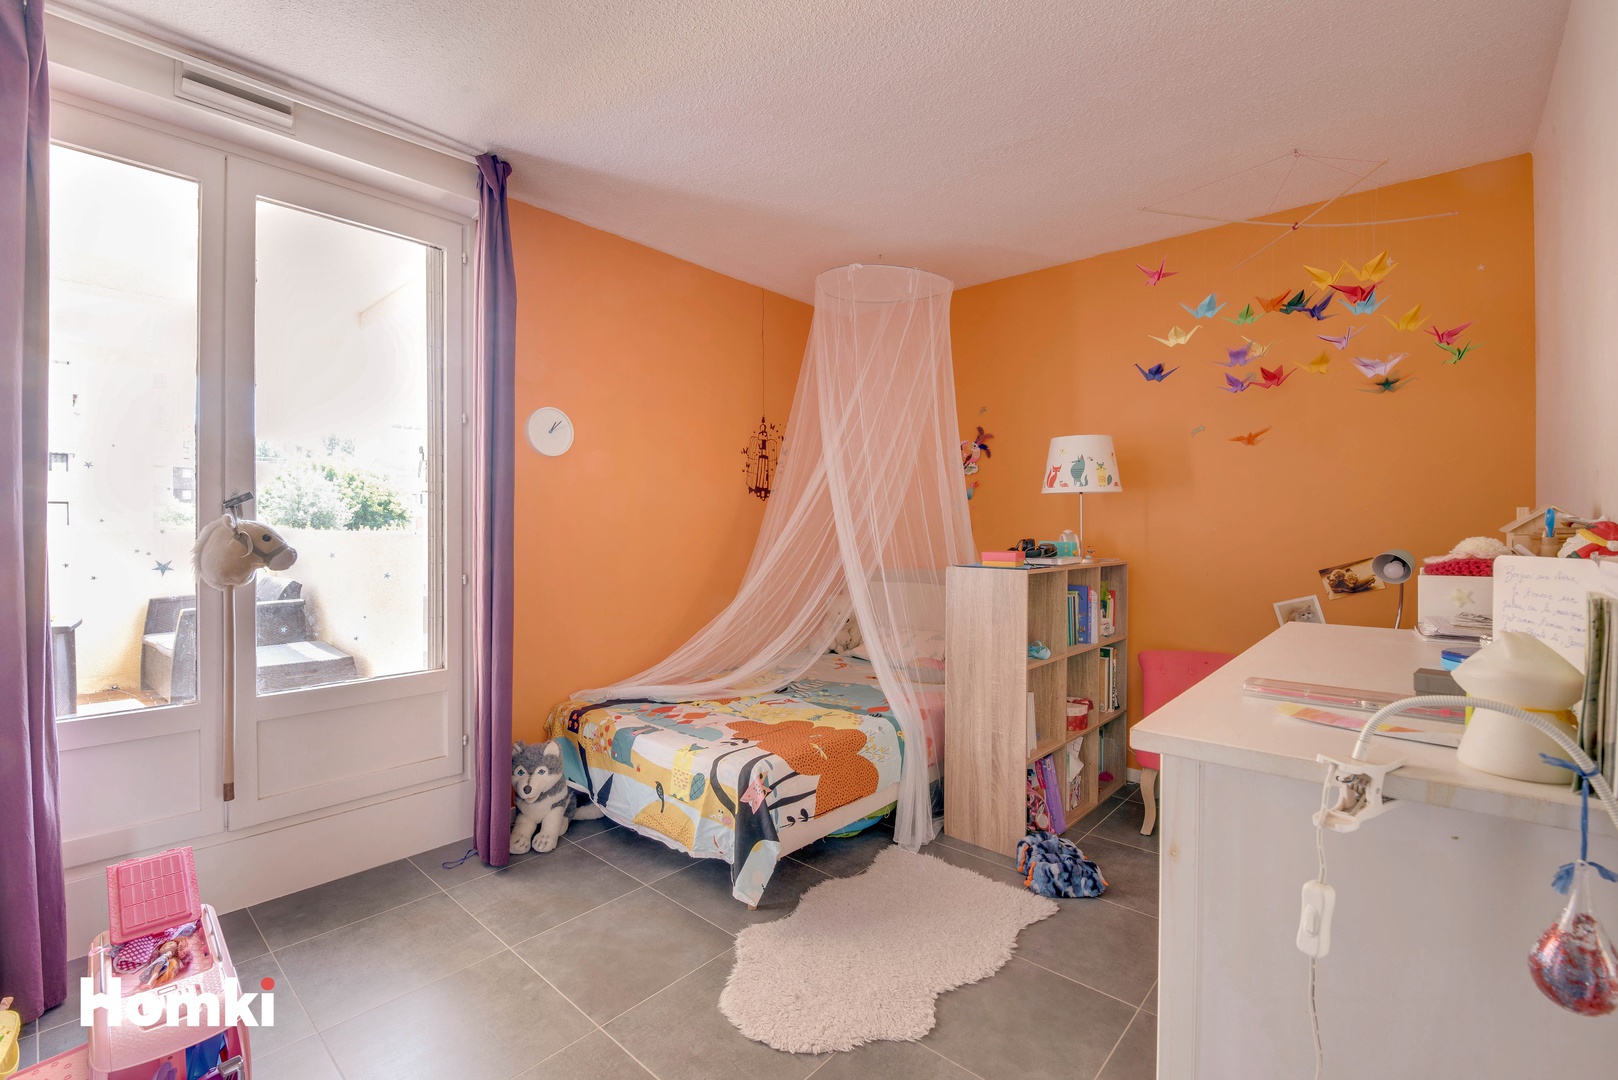 Homki - Vente Appartement  de 92.0 m² à Montpellier 34070